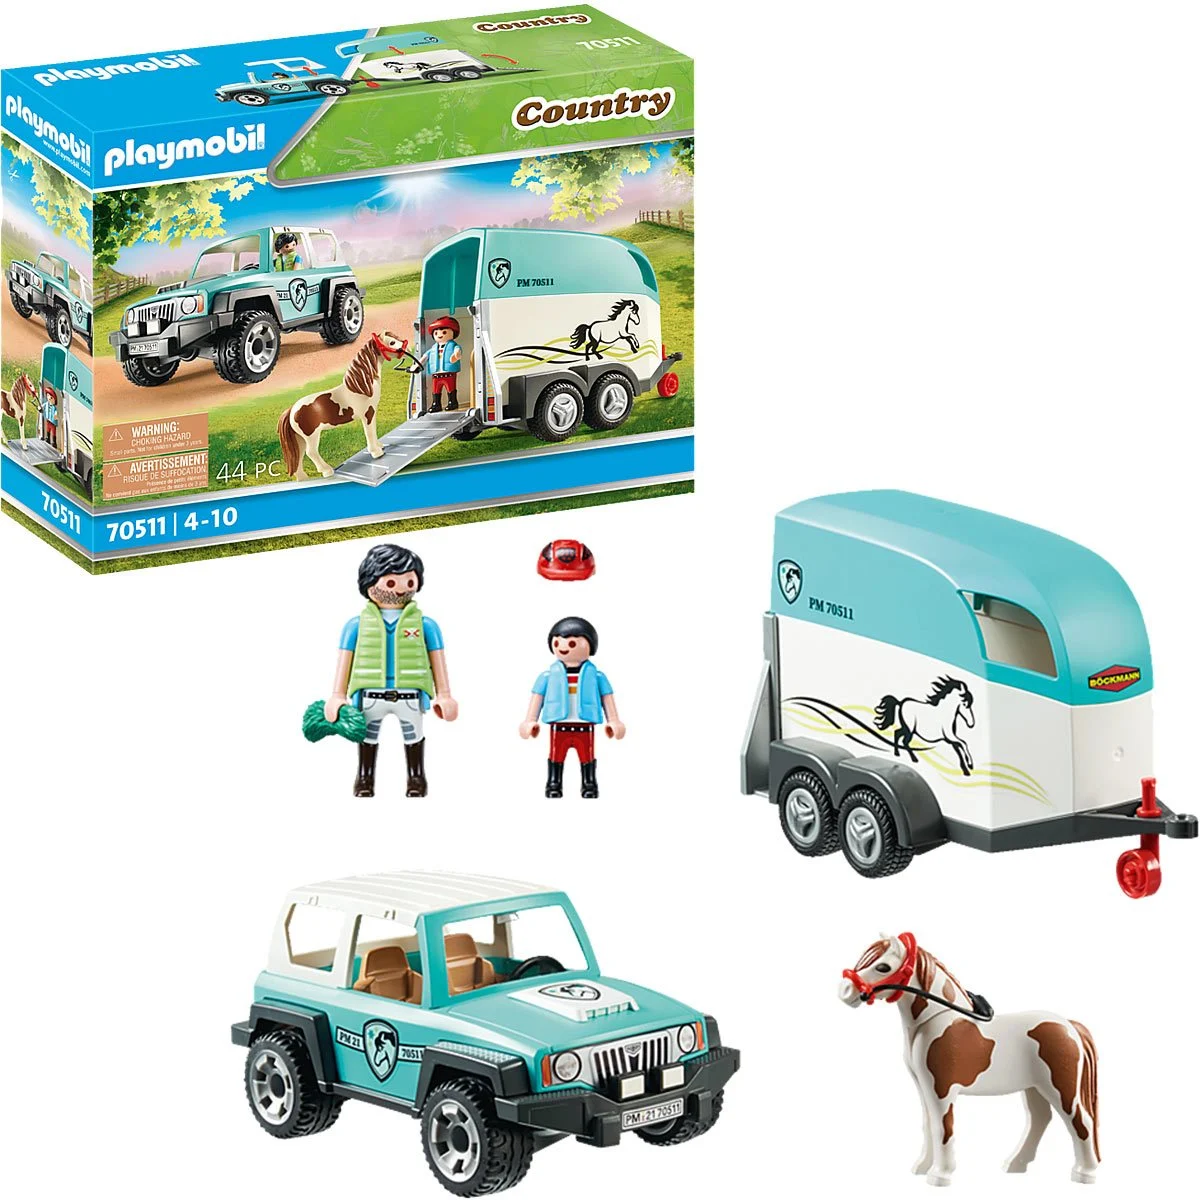 Playmobil country voiture et van pour poney-44pcs-4-10ans – Orca